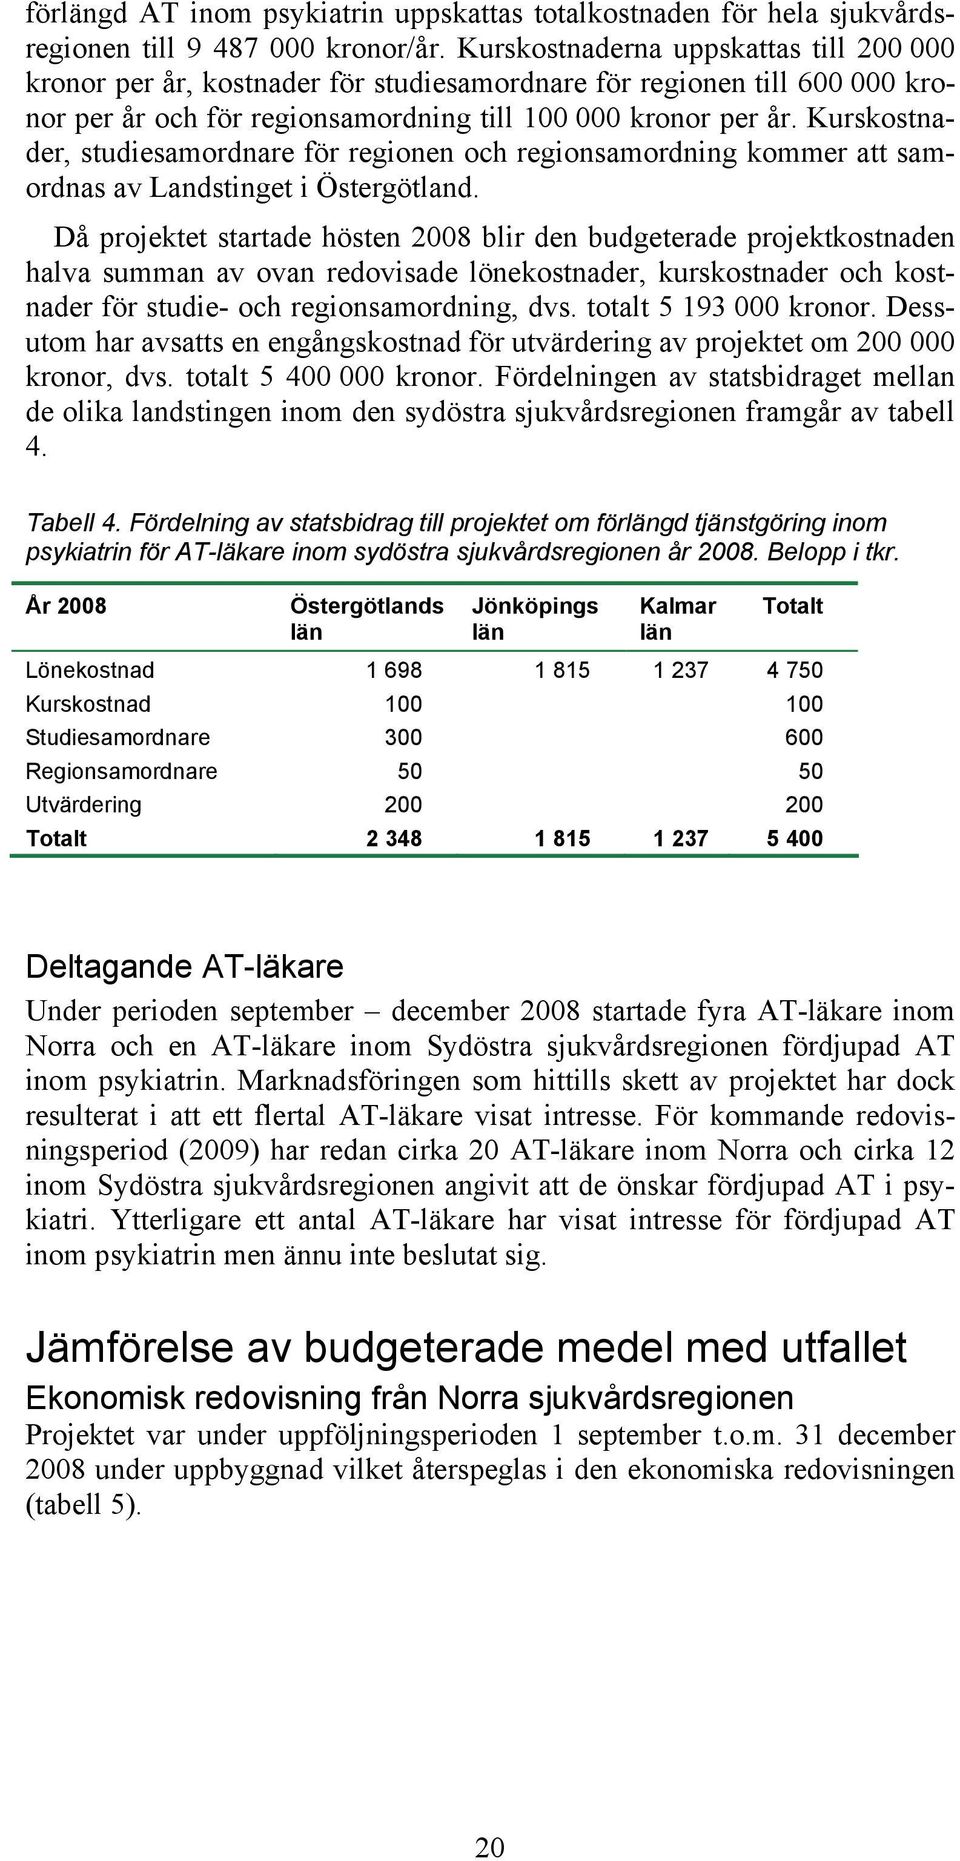 Kurskostnader, studiesamordnare för regionen och regionsamordning kommer att samordnas av Landstinget i Östergötland.